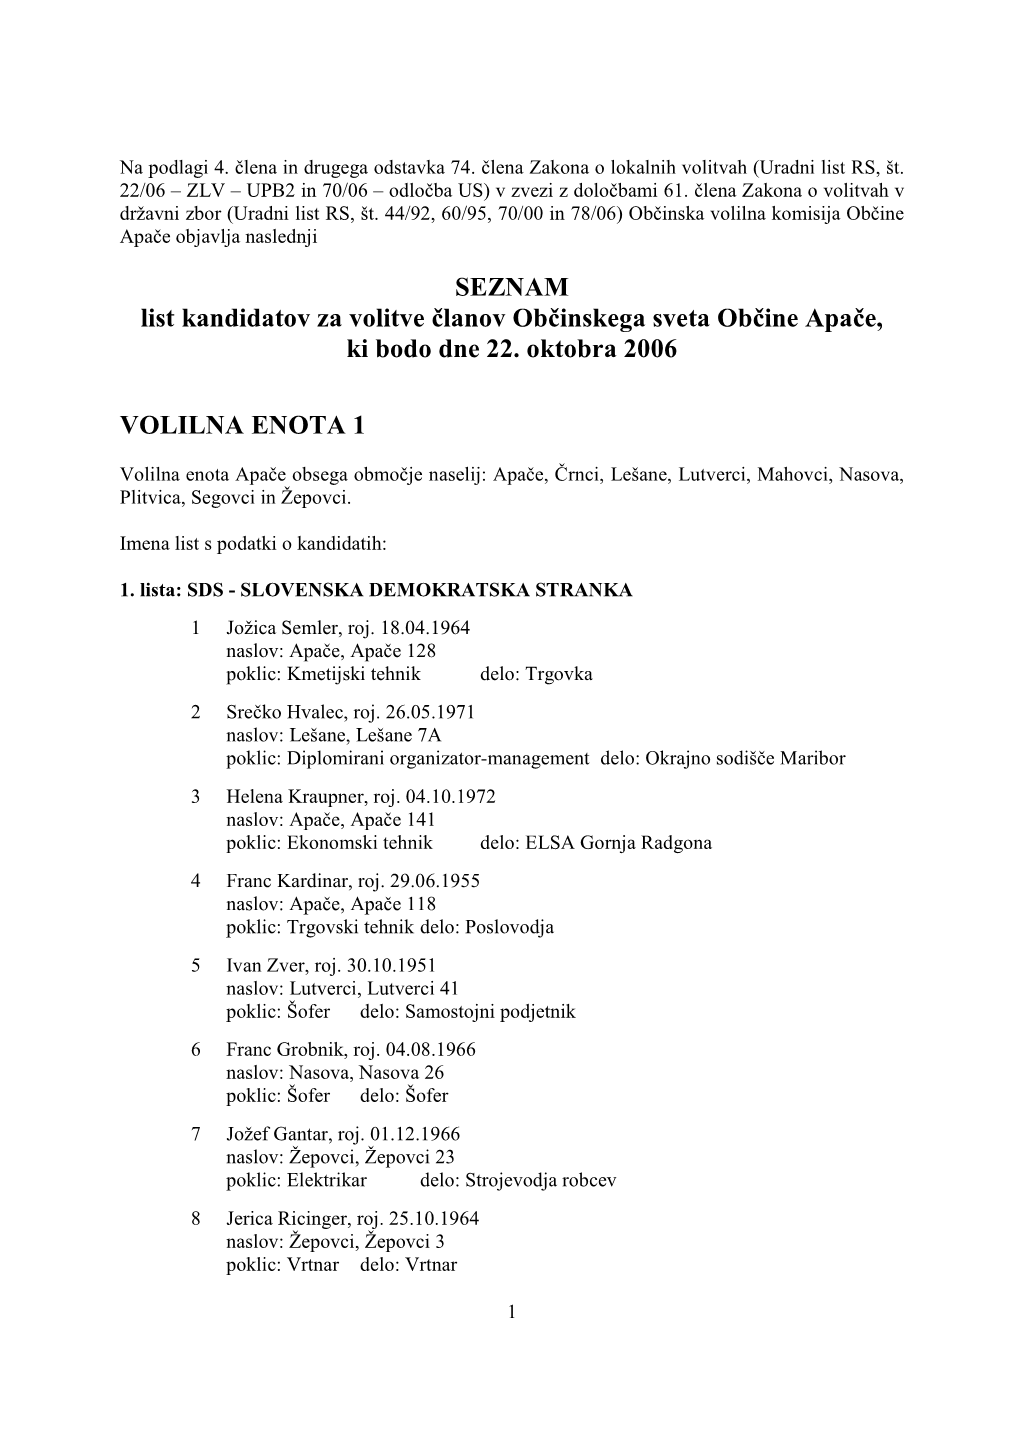 SEZNAM List Kandidatov Za Volitve Članov Občinskega Sveta Občine Apače, Ki Bodo Dne 22